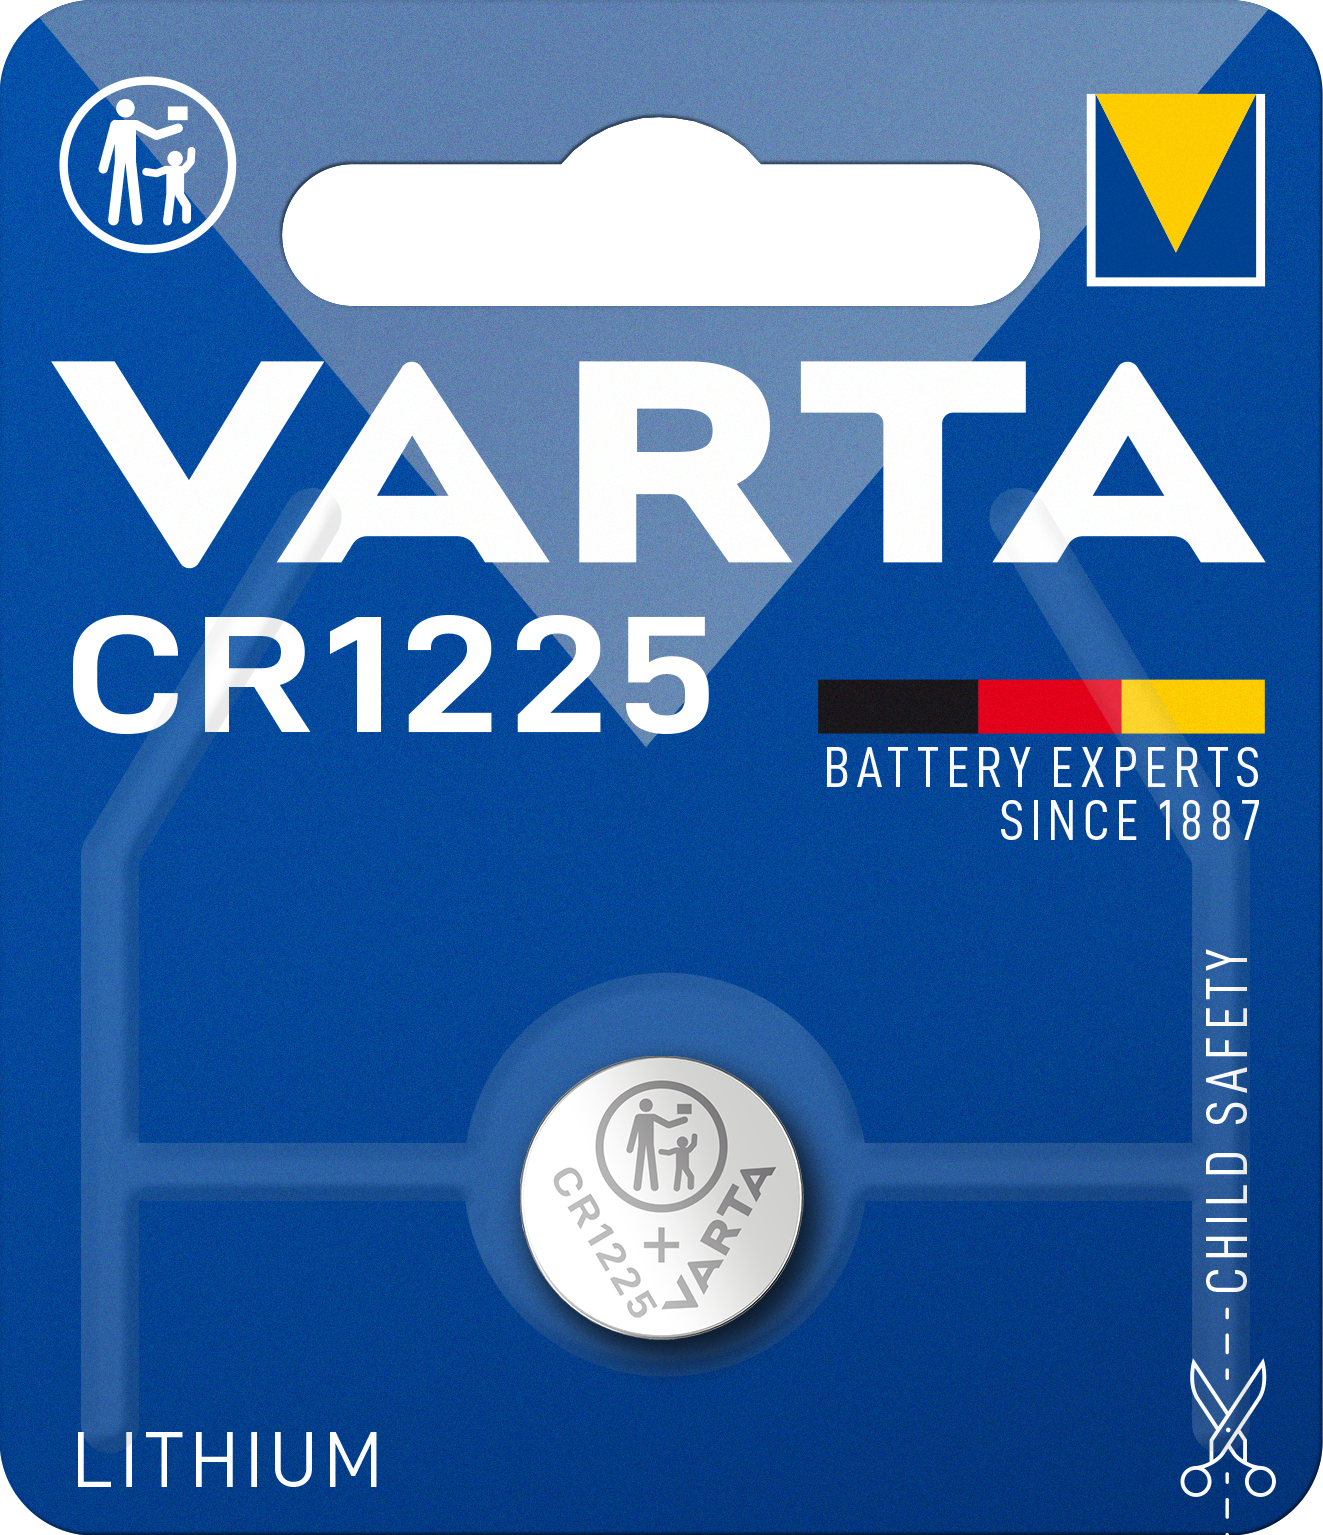 Varta Electronics CR1225 Knopfzelle CR 1225 Lithium 48 mAh 3 V 1 St. - Batterie - Batterie - CR1225